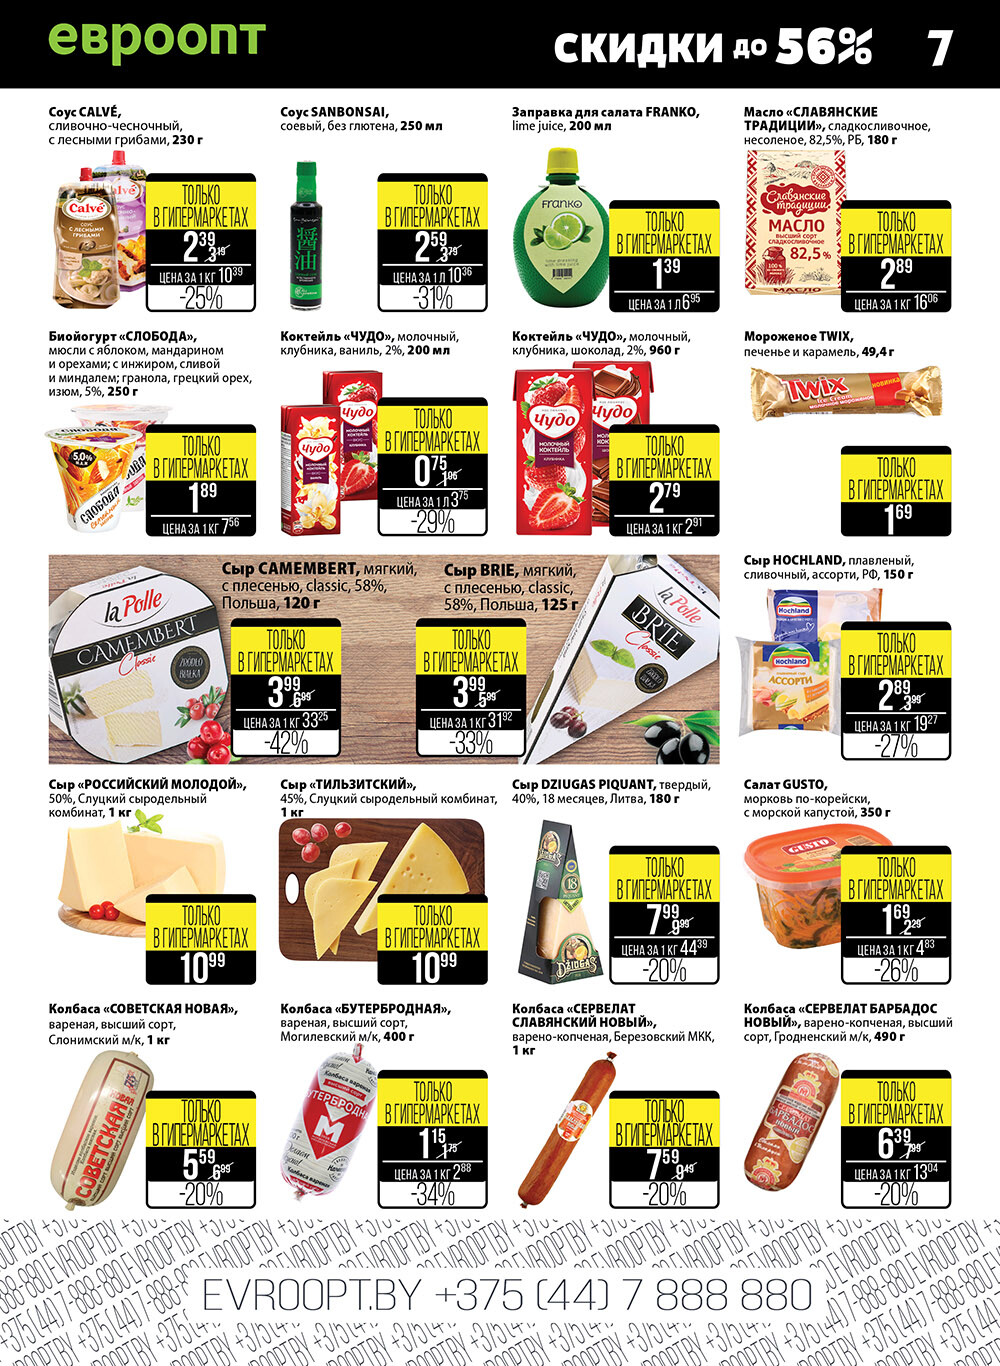 Каталог (листовка) акции "Пятница и суббота черных цен" гипермаркет Евроопт с 13 по 14 августа 2021 года